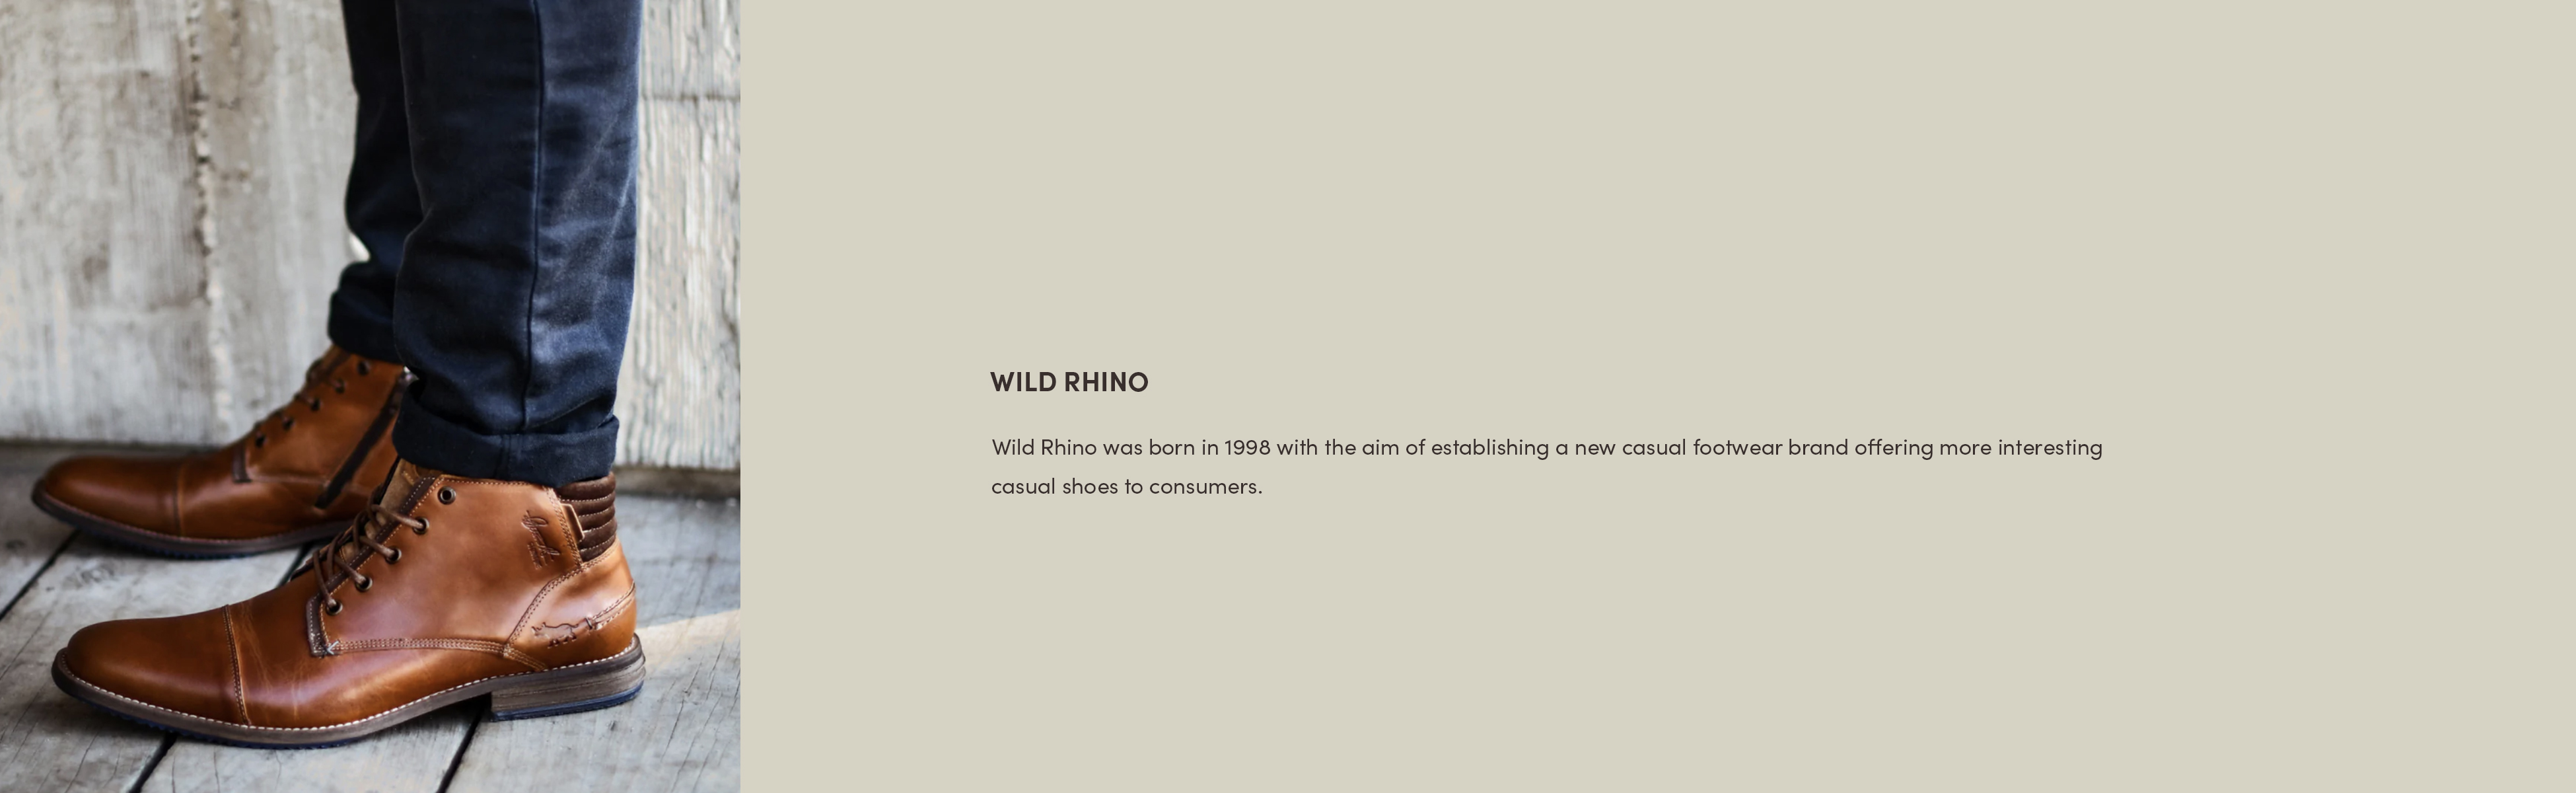 Wild_Rhino_banner